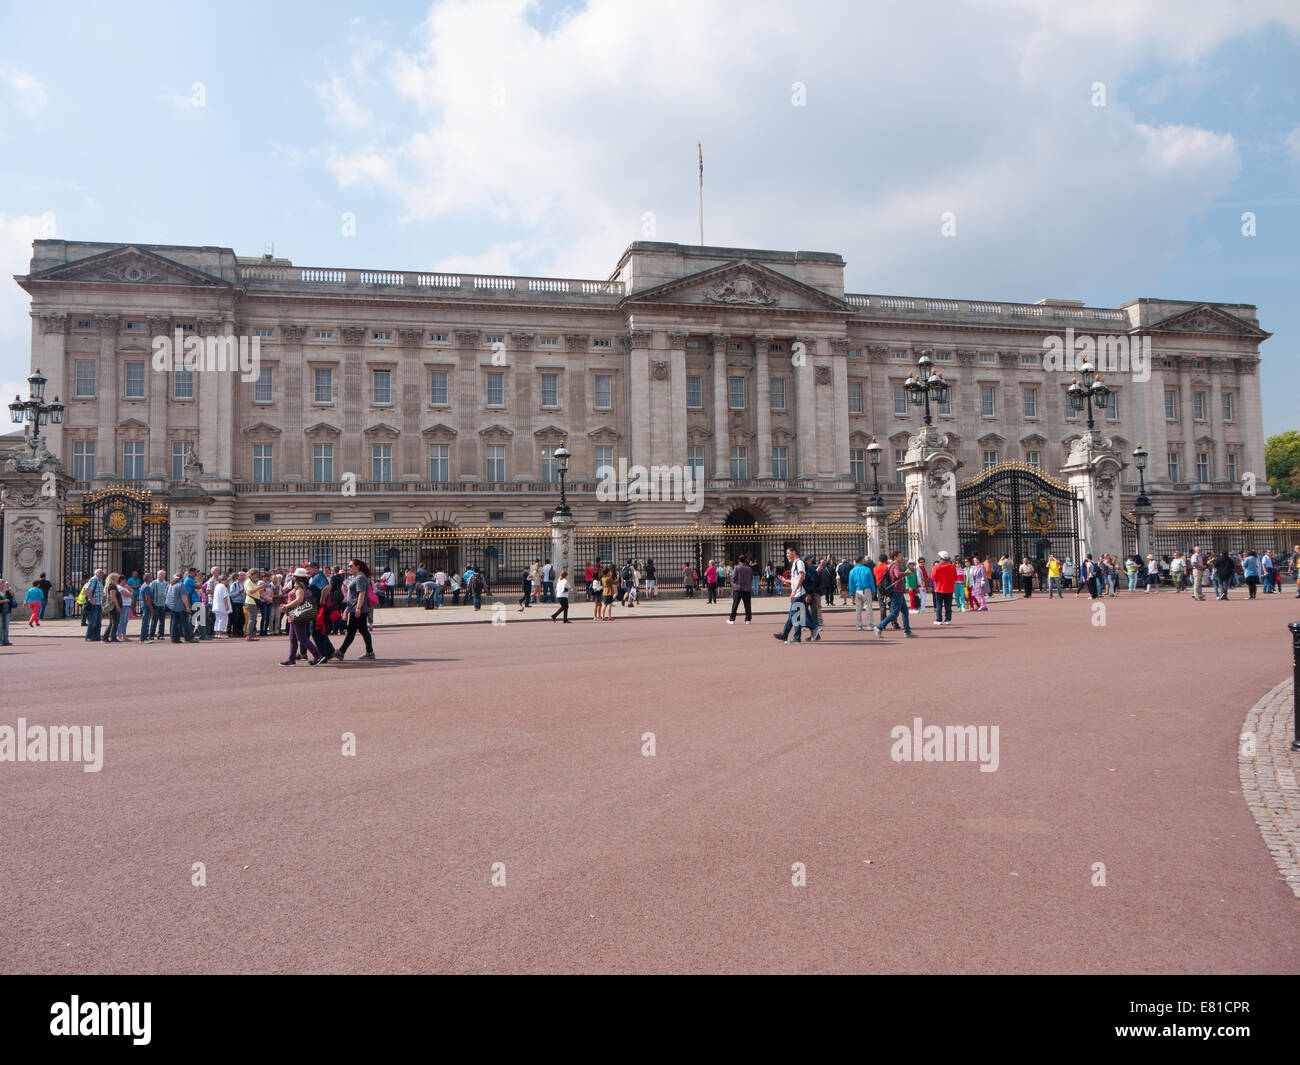 Buckingham Palace, London, UK Stock Photo